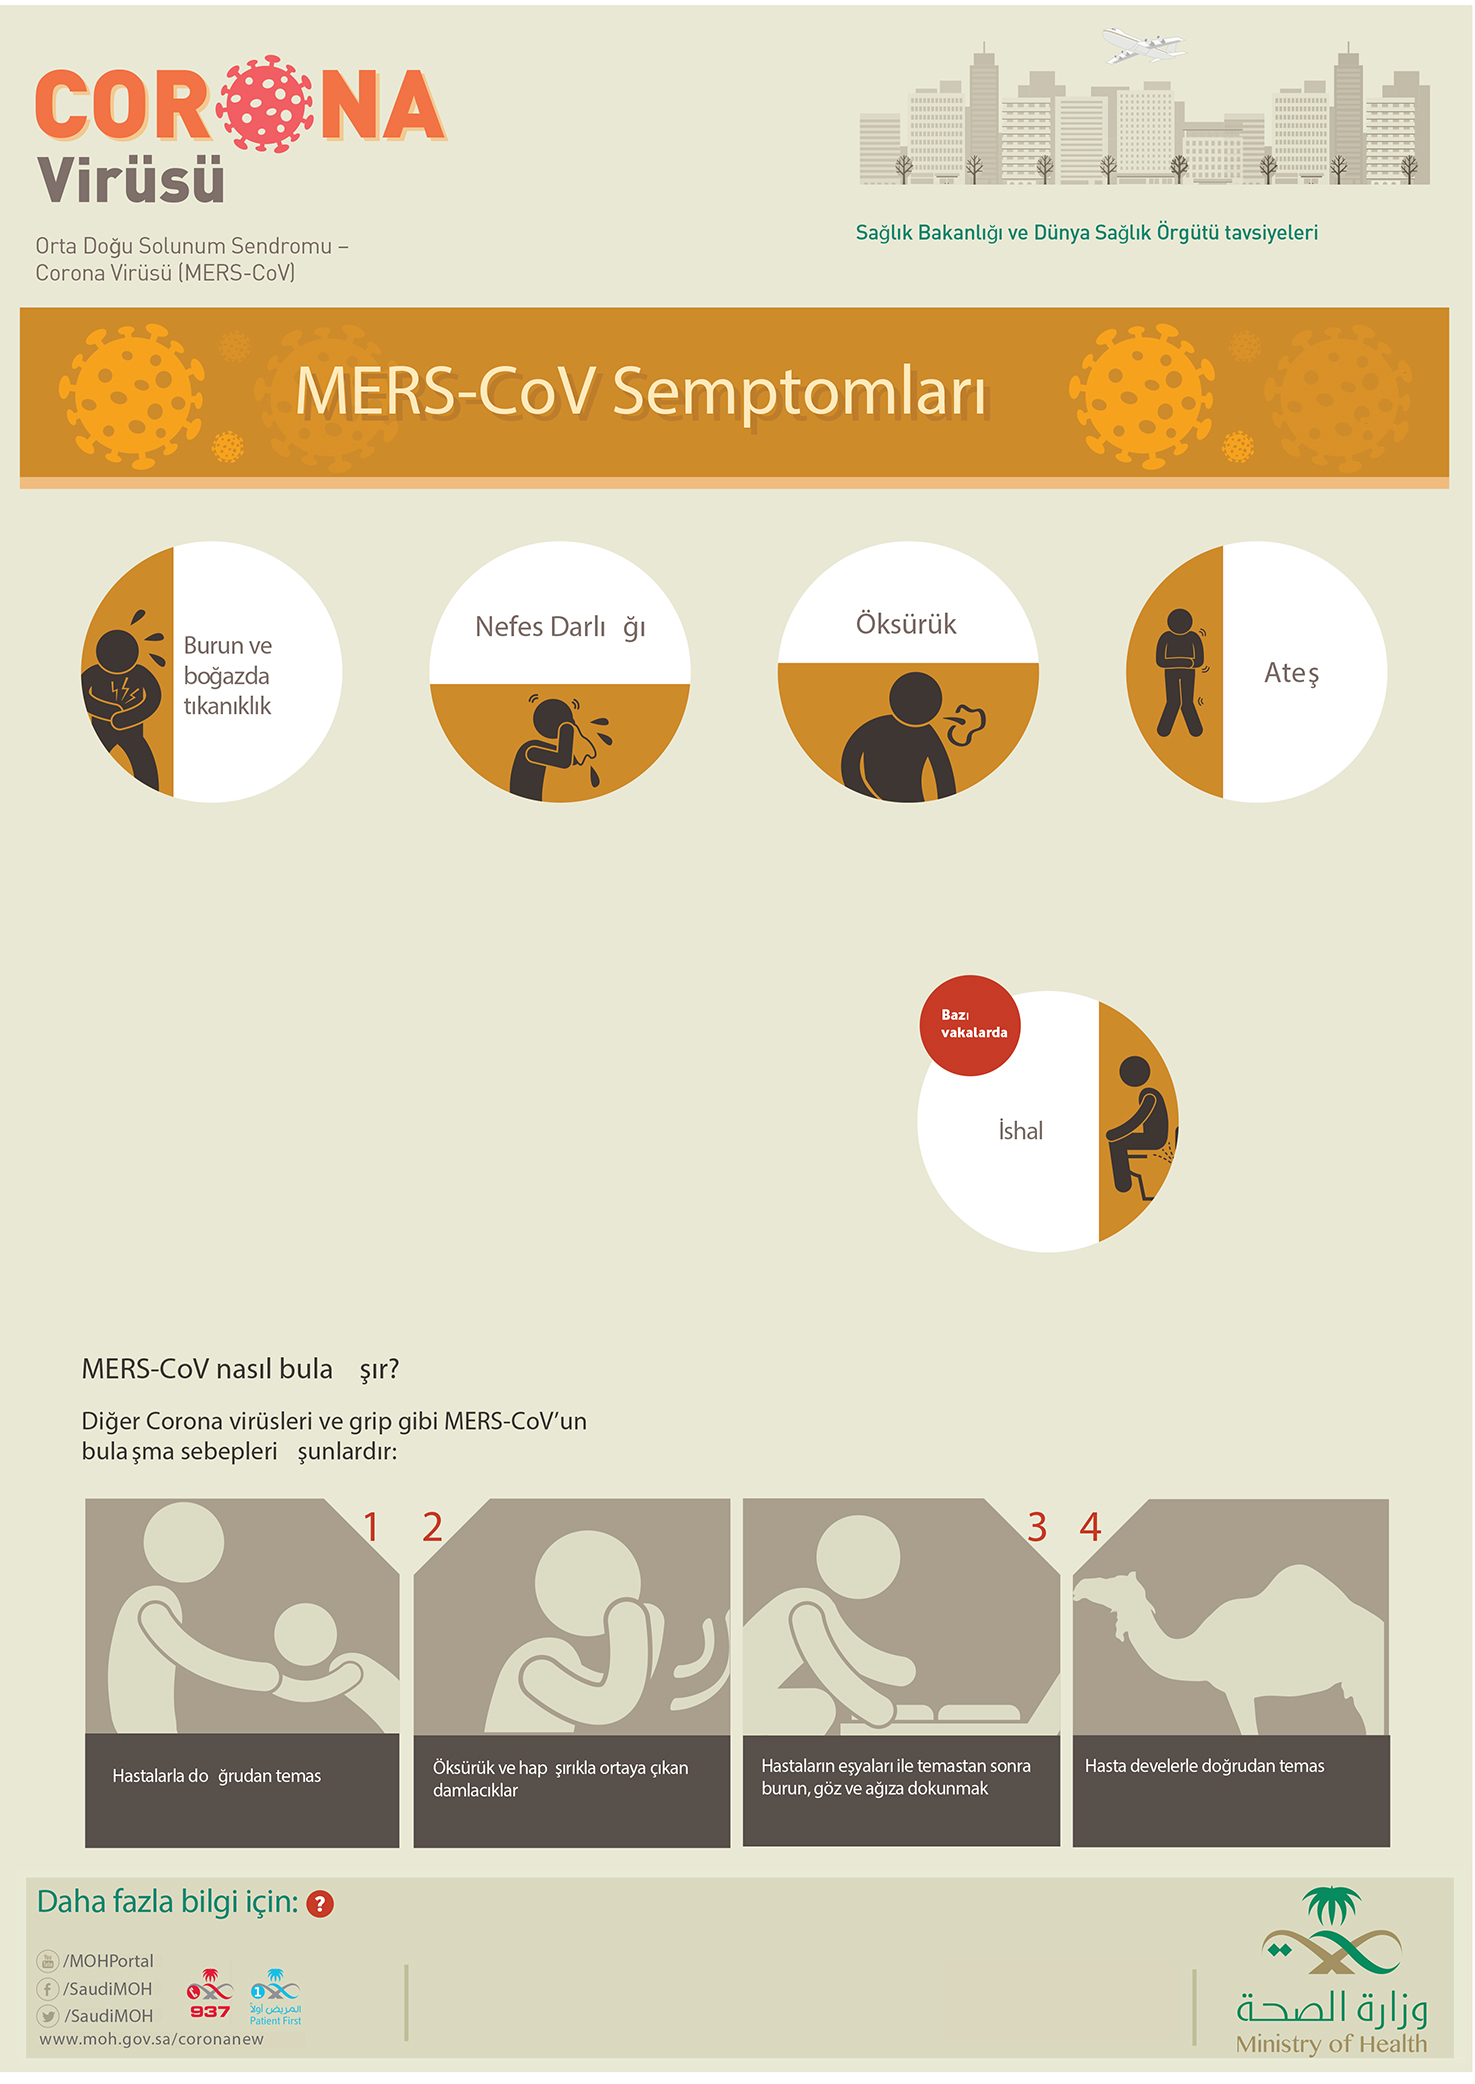 Coronavirus (MERS-CoV) - Corona virus (MERS-COV) Infographics